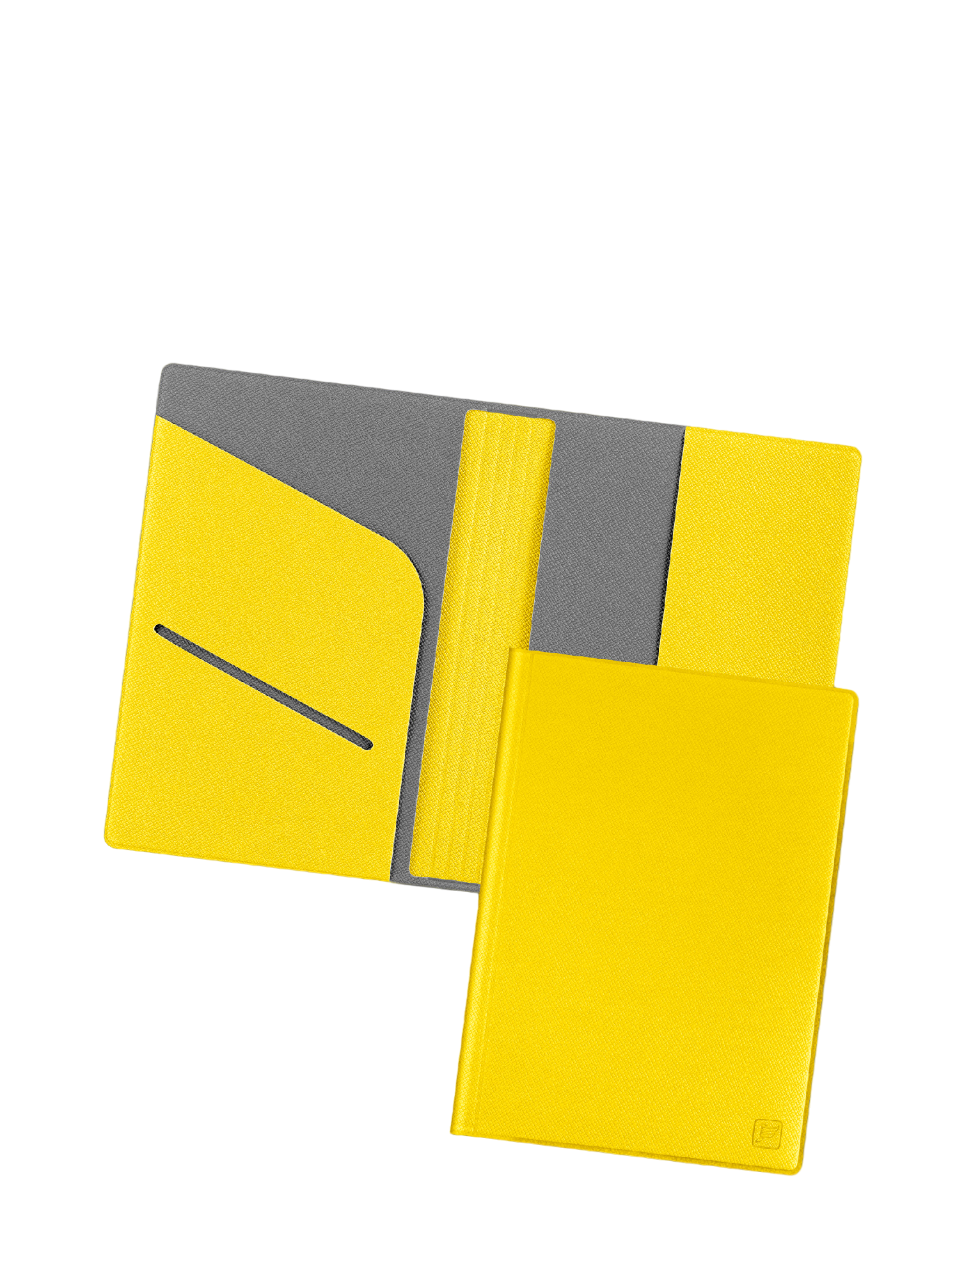 Обложка для паспорта унисекс Flexpocket KOP-01 желто-серая